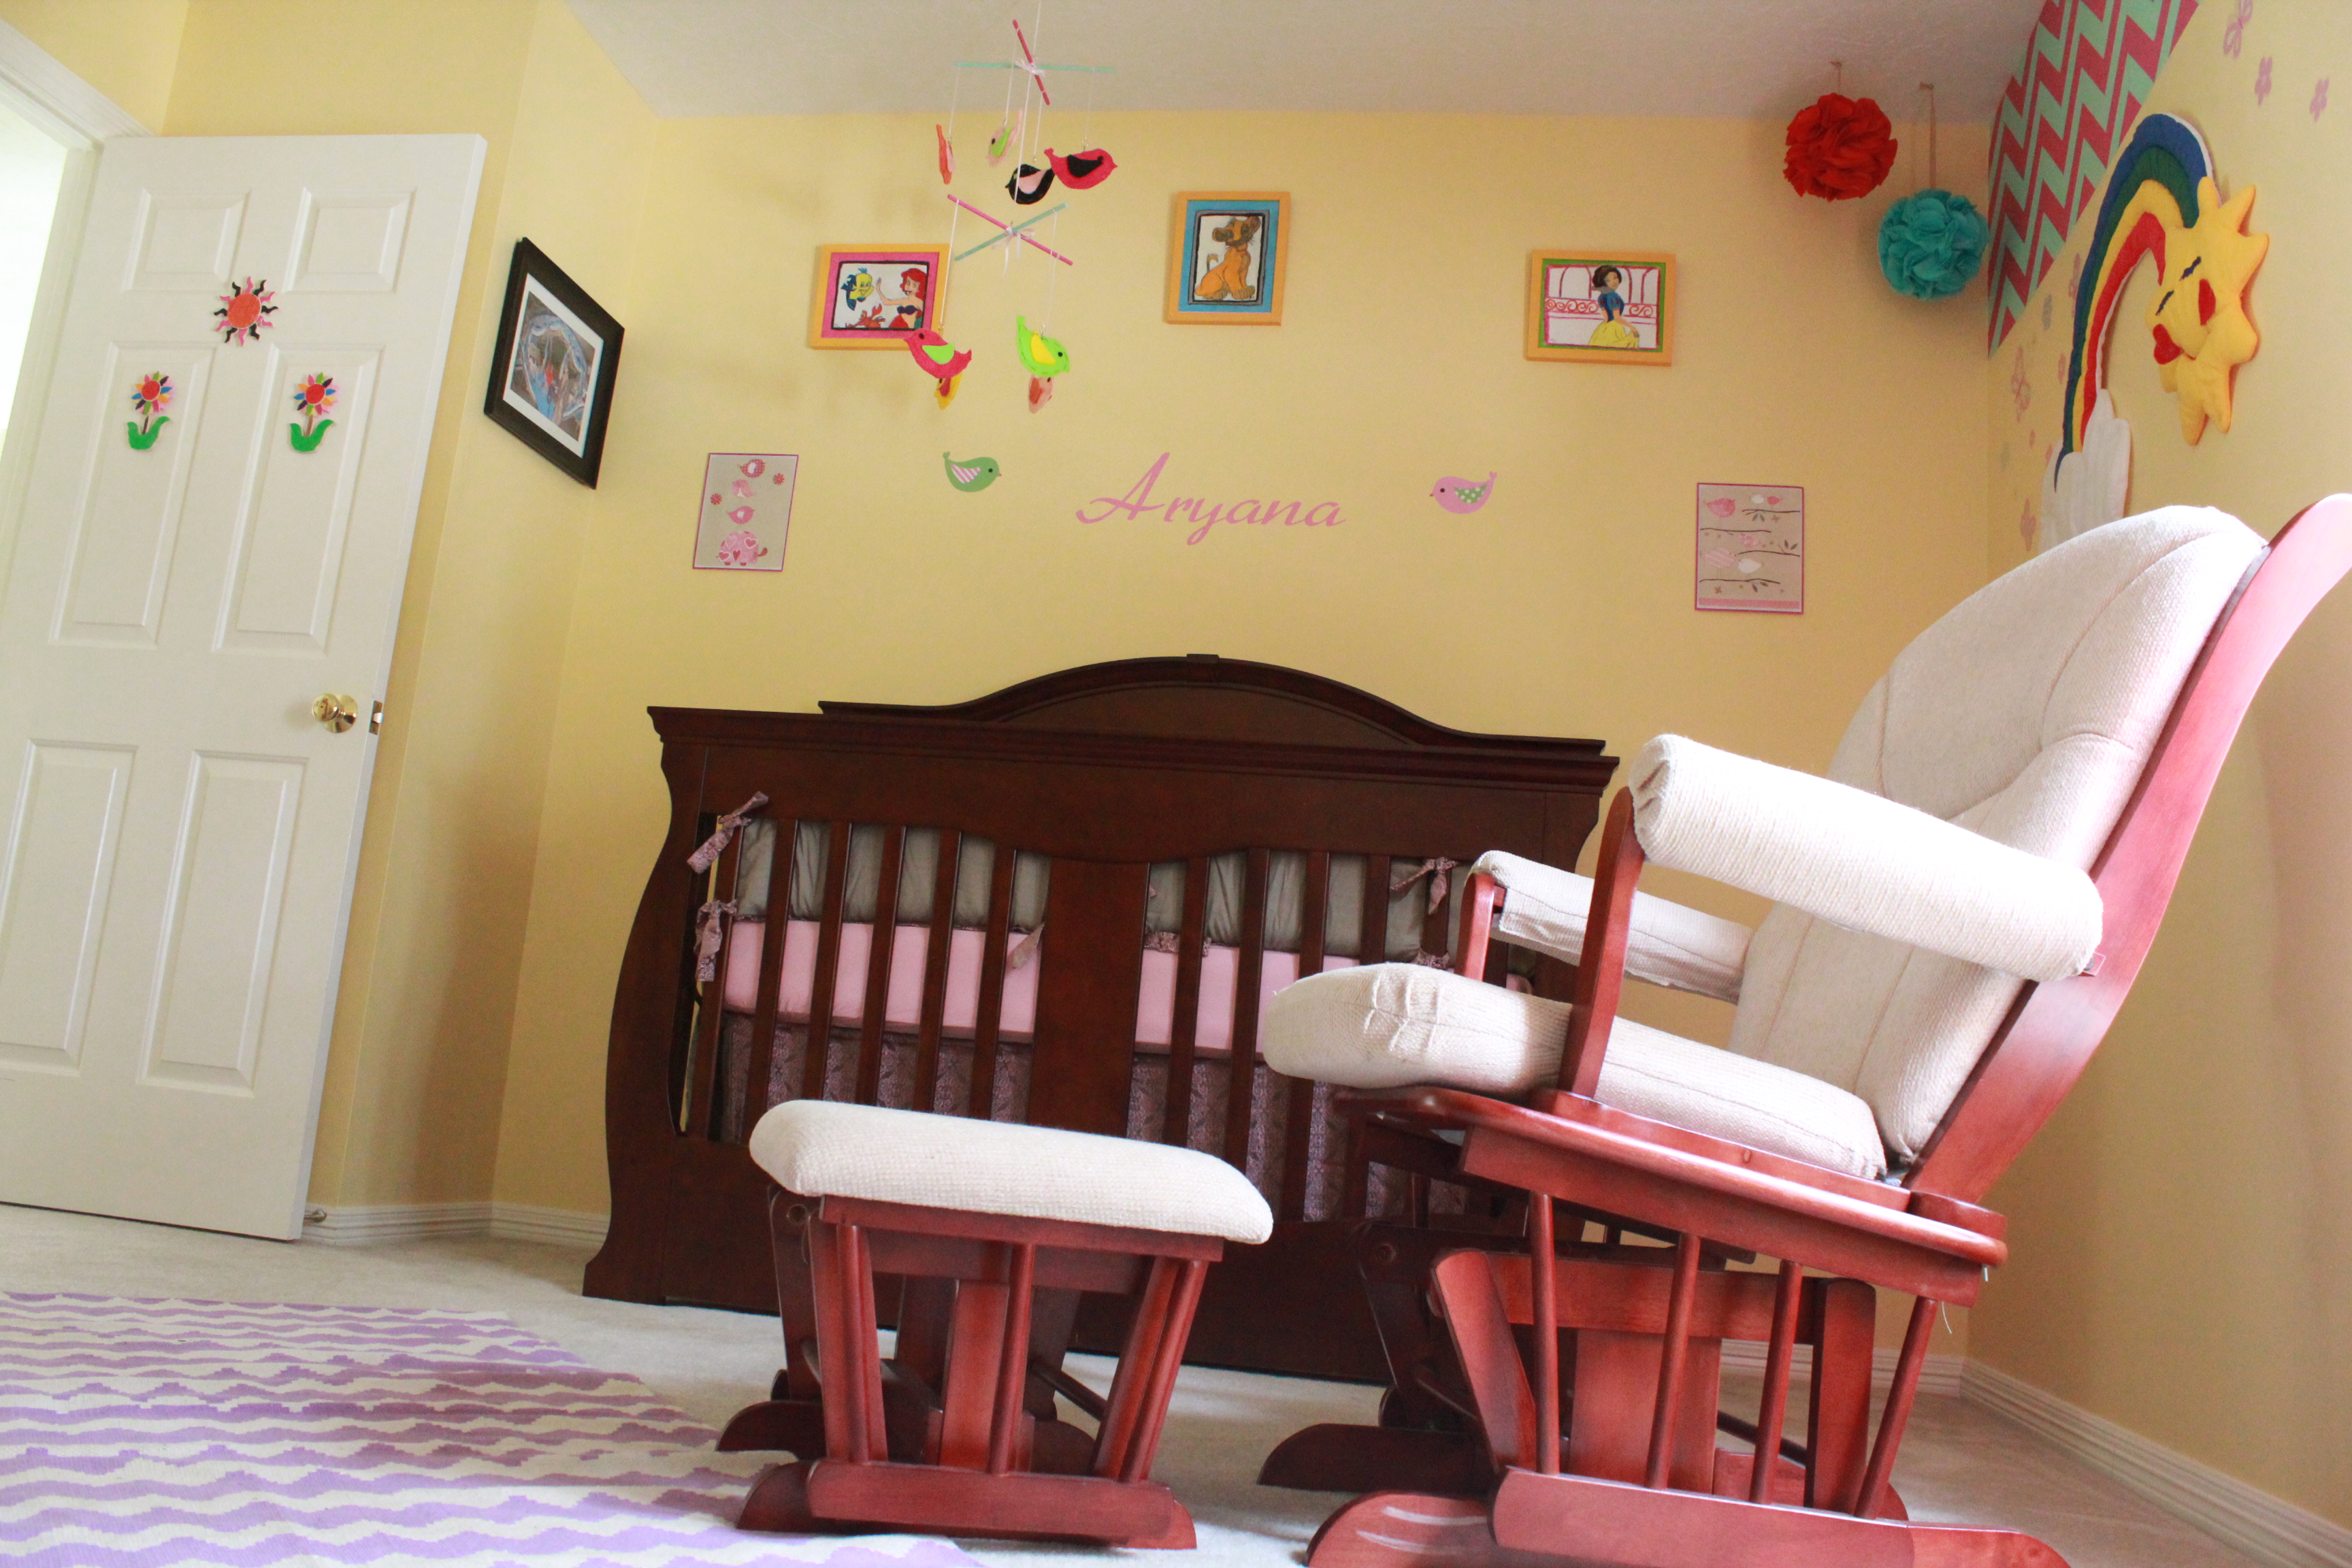 Aryana's Simple Nursery 2